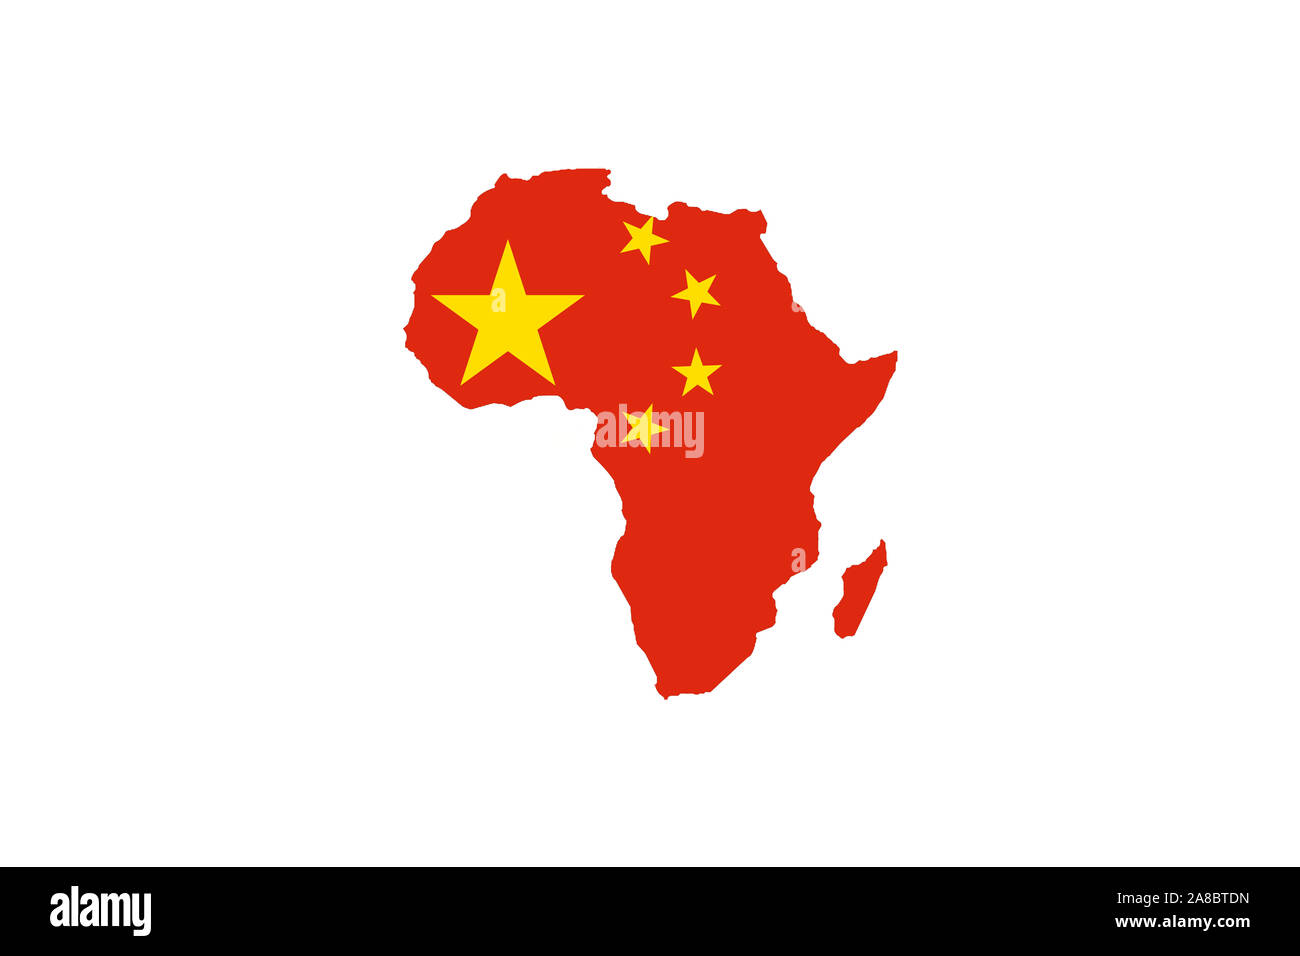 Der afrikanische Kontinent mit den Farben der chinesischen Nationalfahne, Afrika in chinesischer Hand, China auf dem Weg zur Weltmacht, Sicherung von Stock Photo